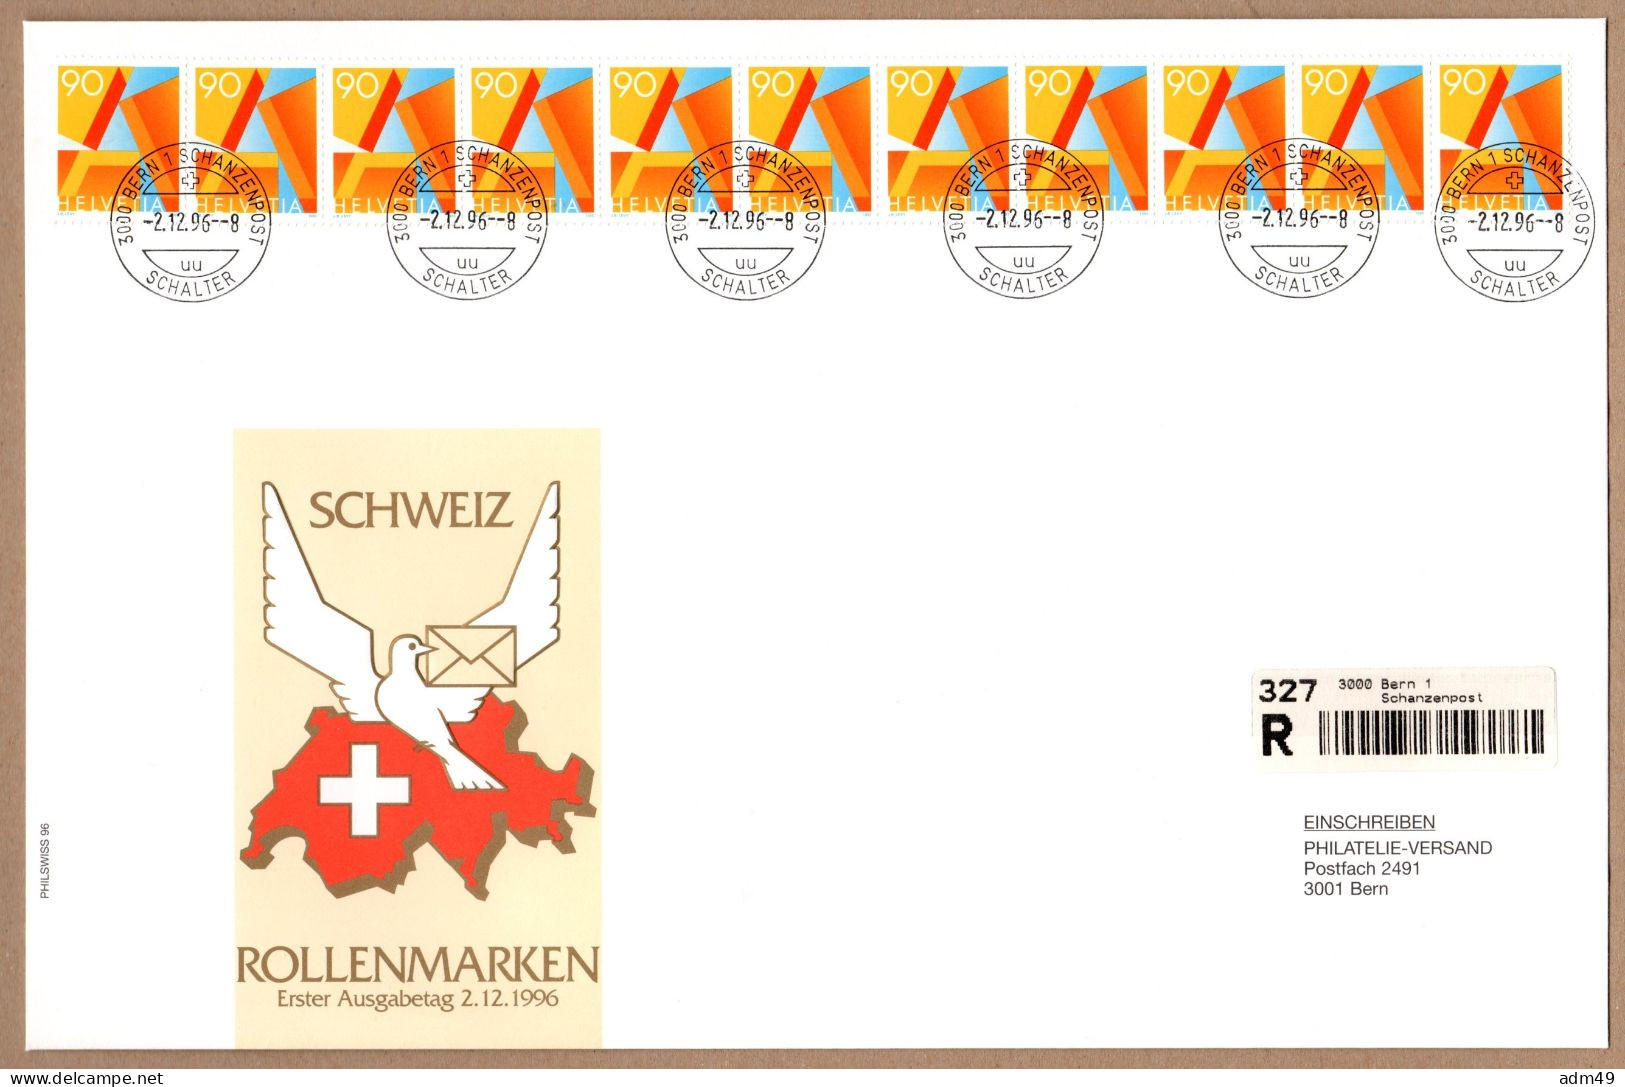 SCHWEIZ, 1996 Rollenmarken-FDC - Coil Stamps